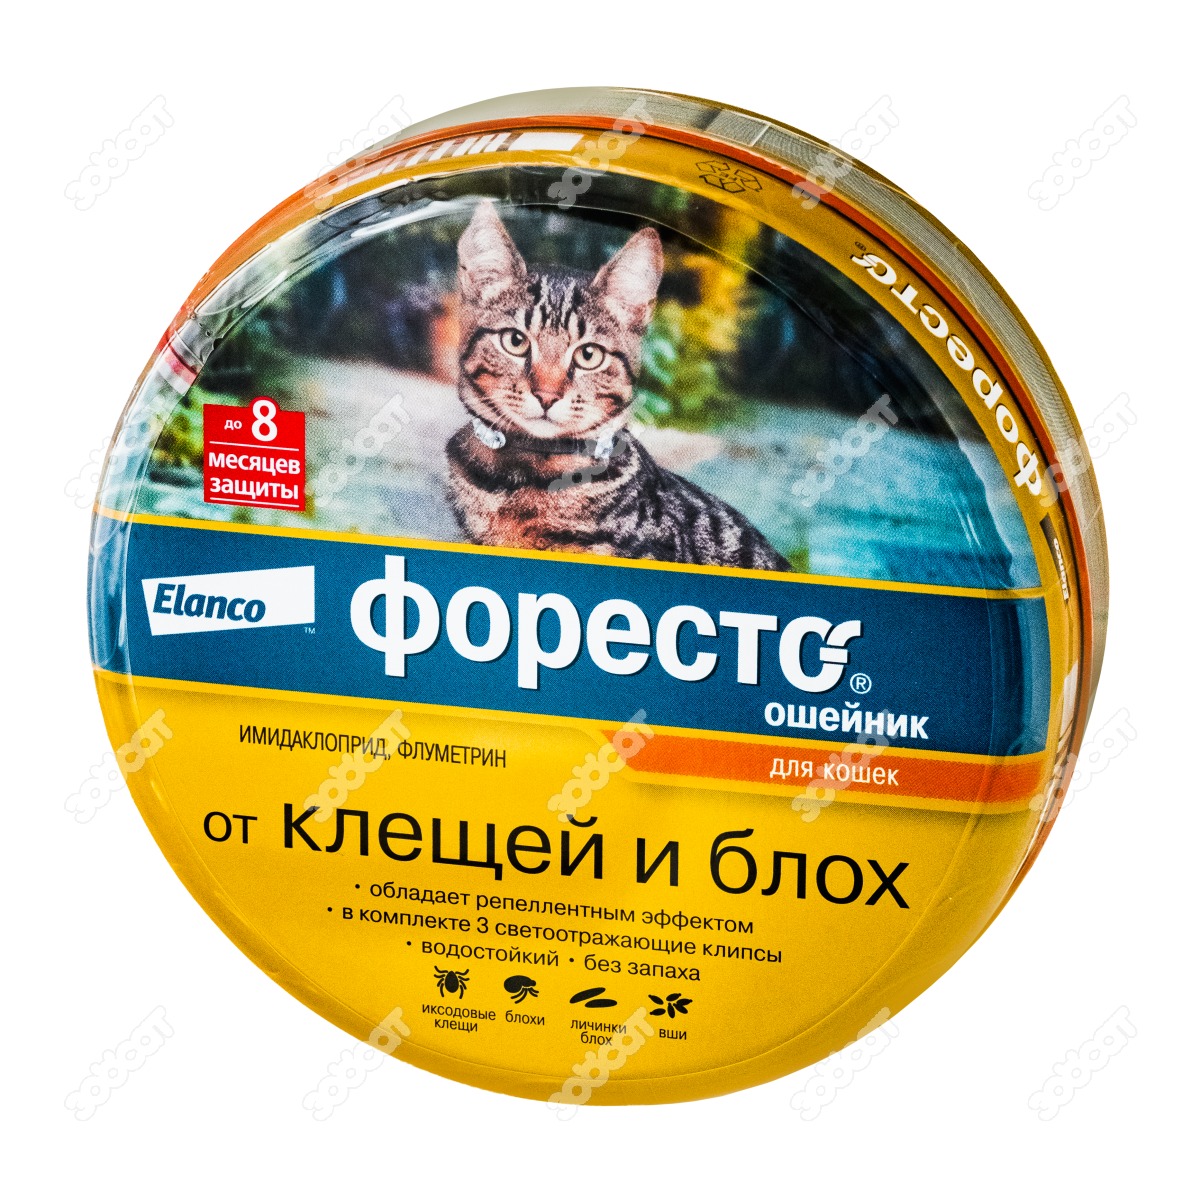 Форесто для кошек купить. Эланко "Форесто" ошейник инсекцитидный для кошек 38см цвет.